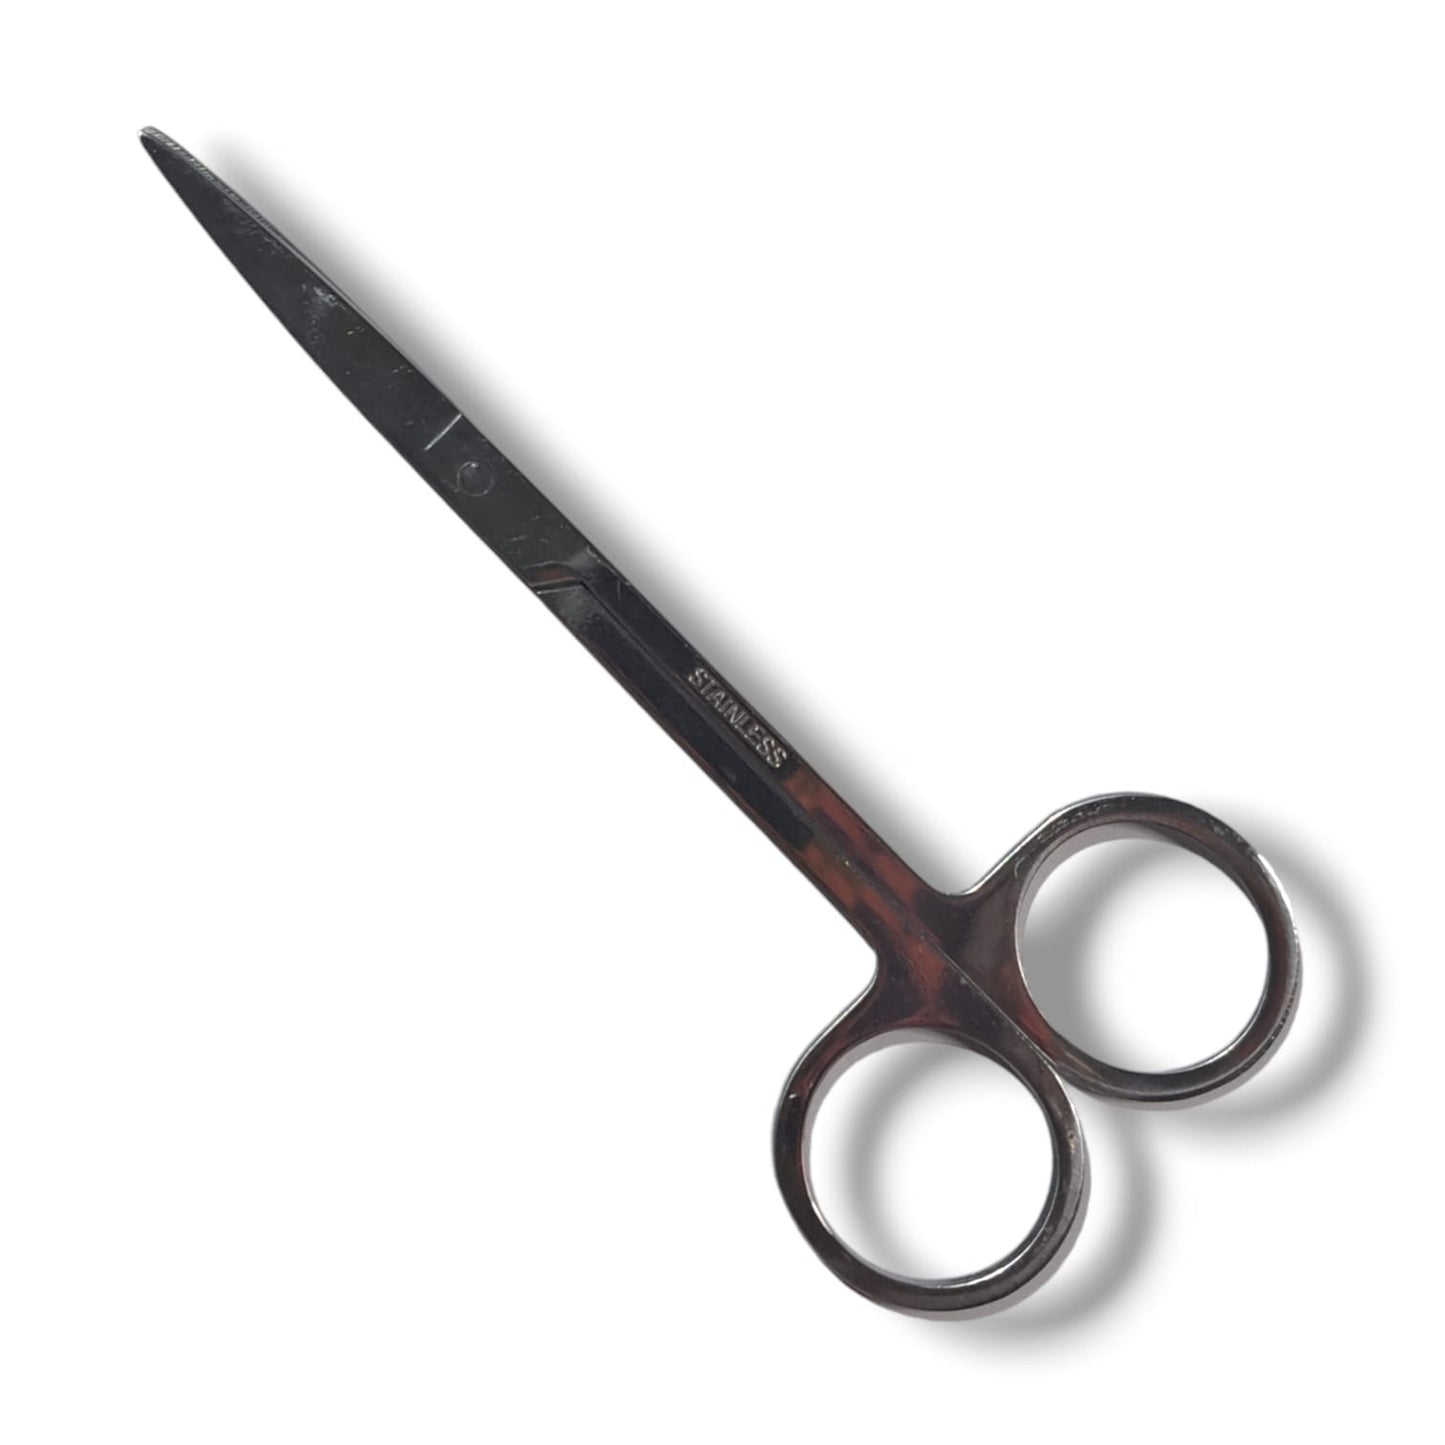 Stainless Steel Beauty Scissors